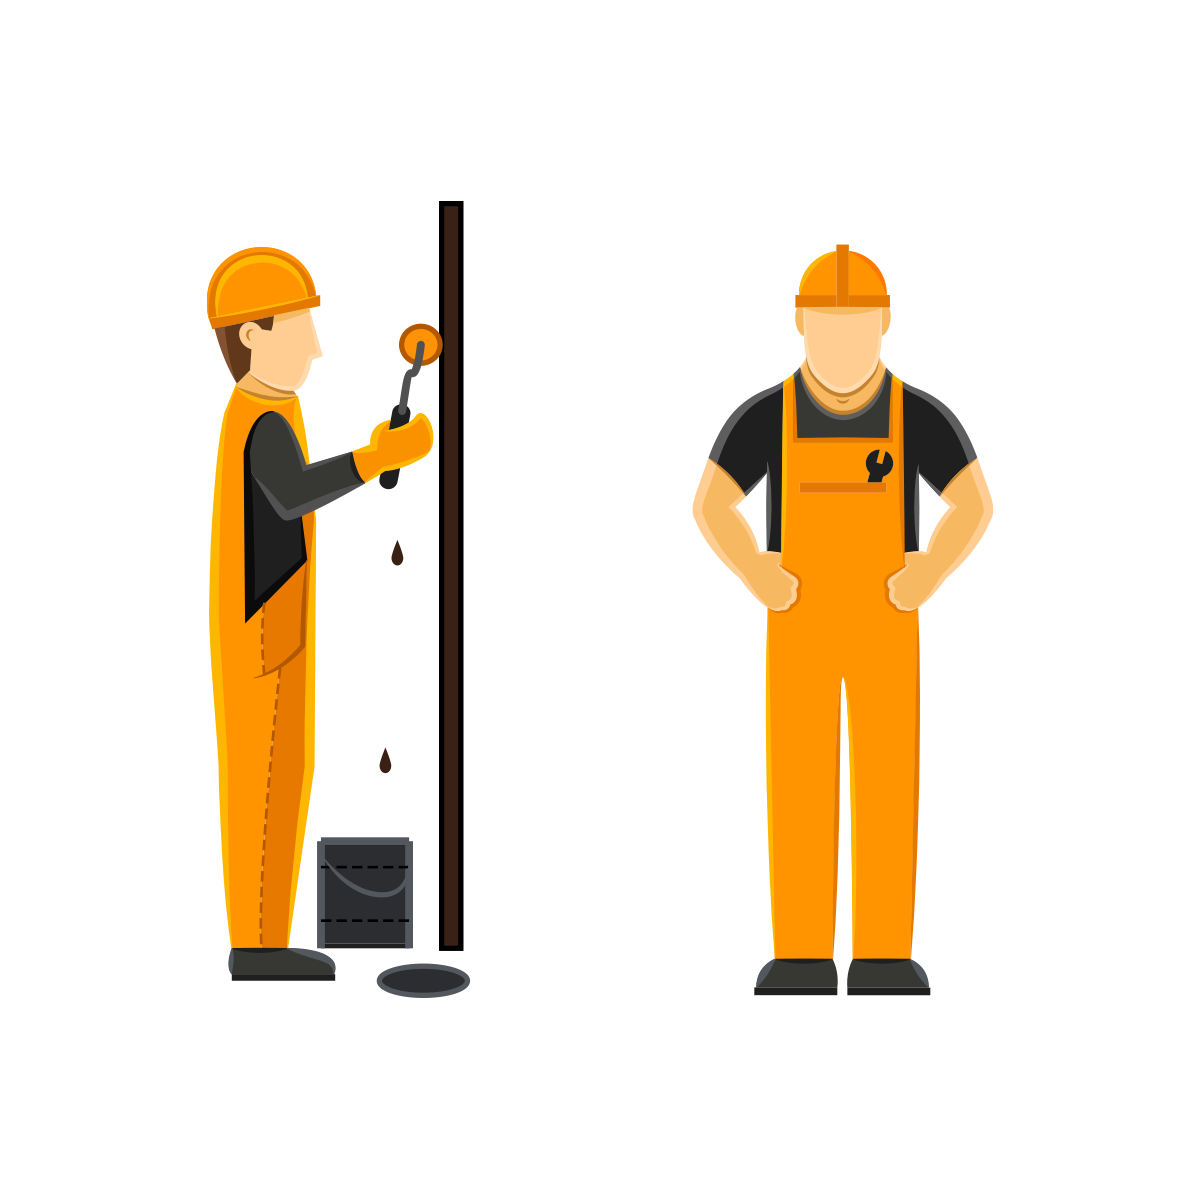 Services: Sanierung Bild - 2 Bauarbeiter, die eine Sanierung vornehmen | Services